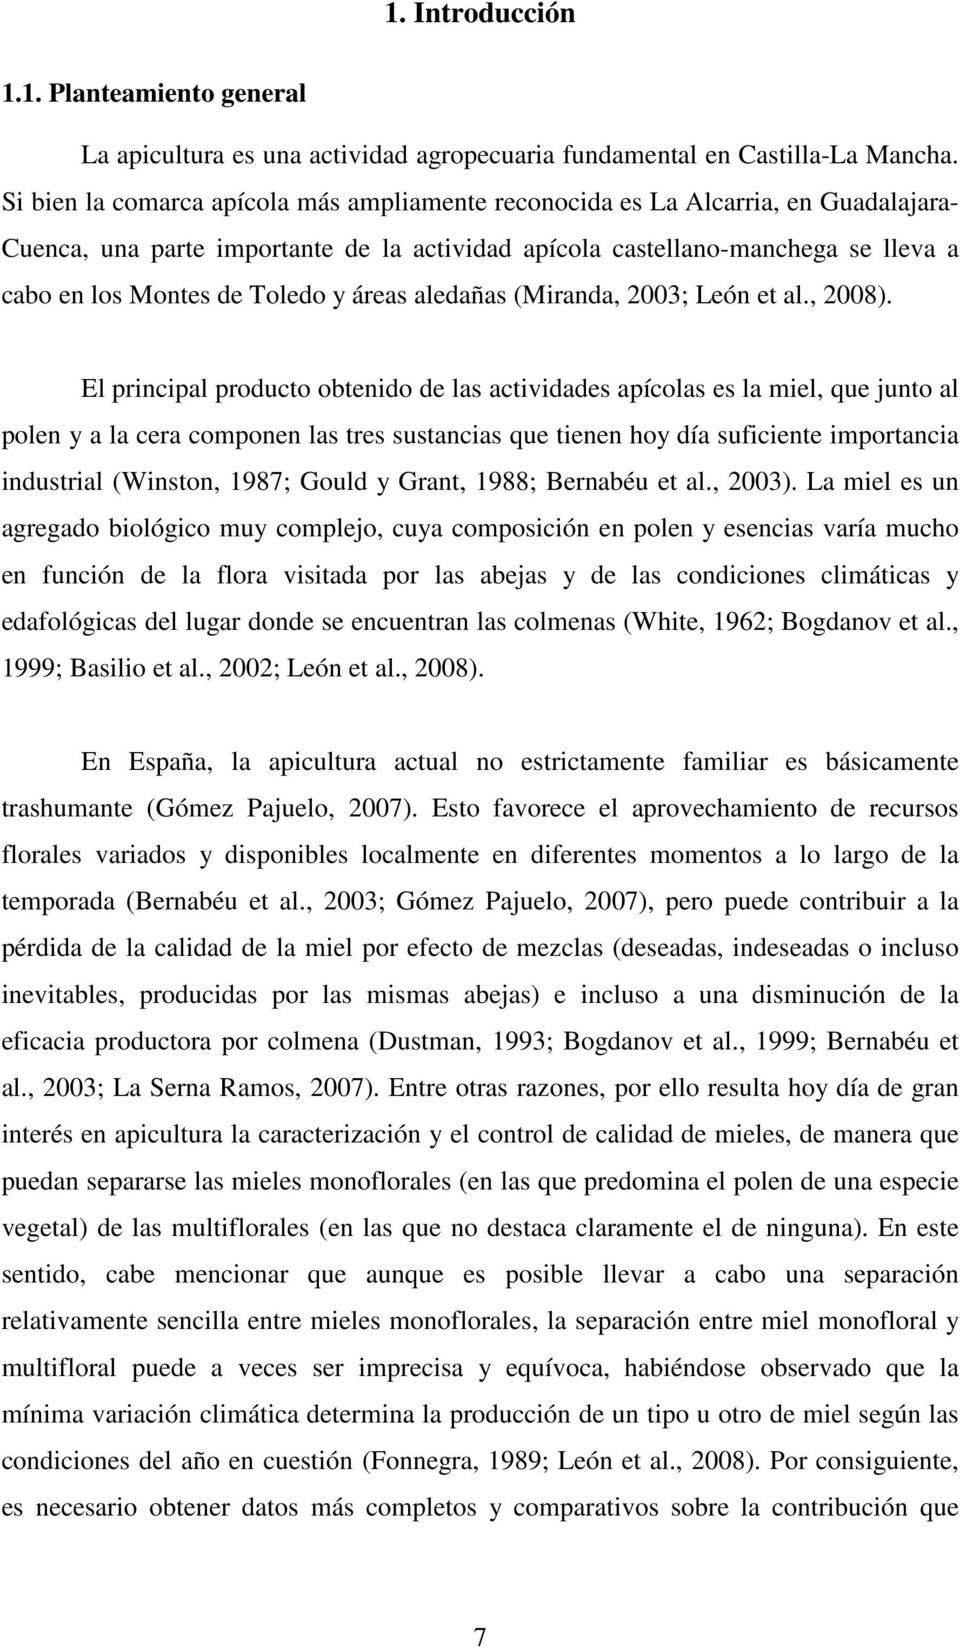 y áreas aledañas (Miranda, 2003; León et al., 2008).